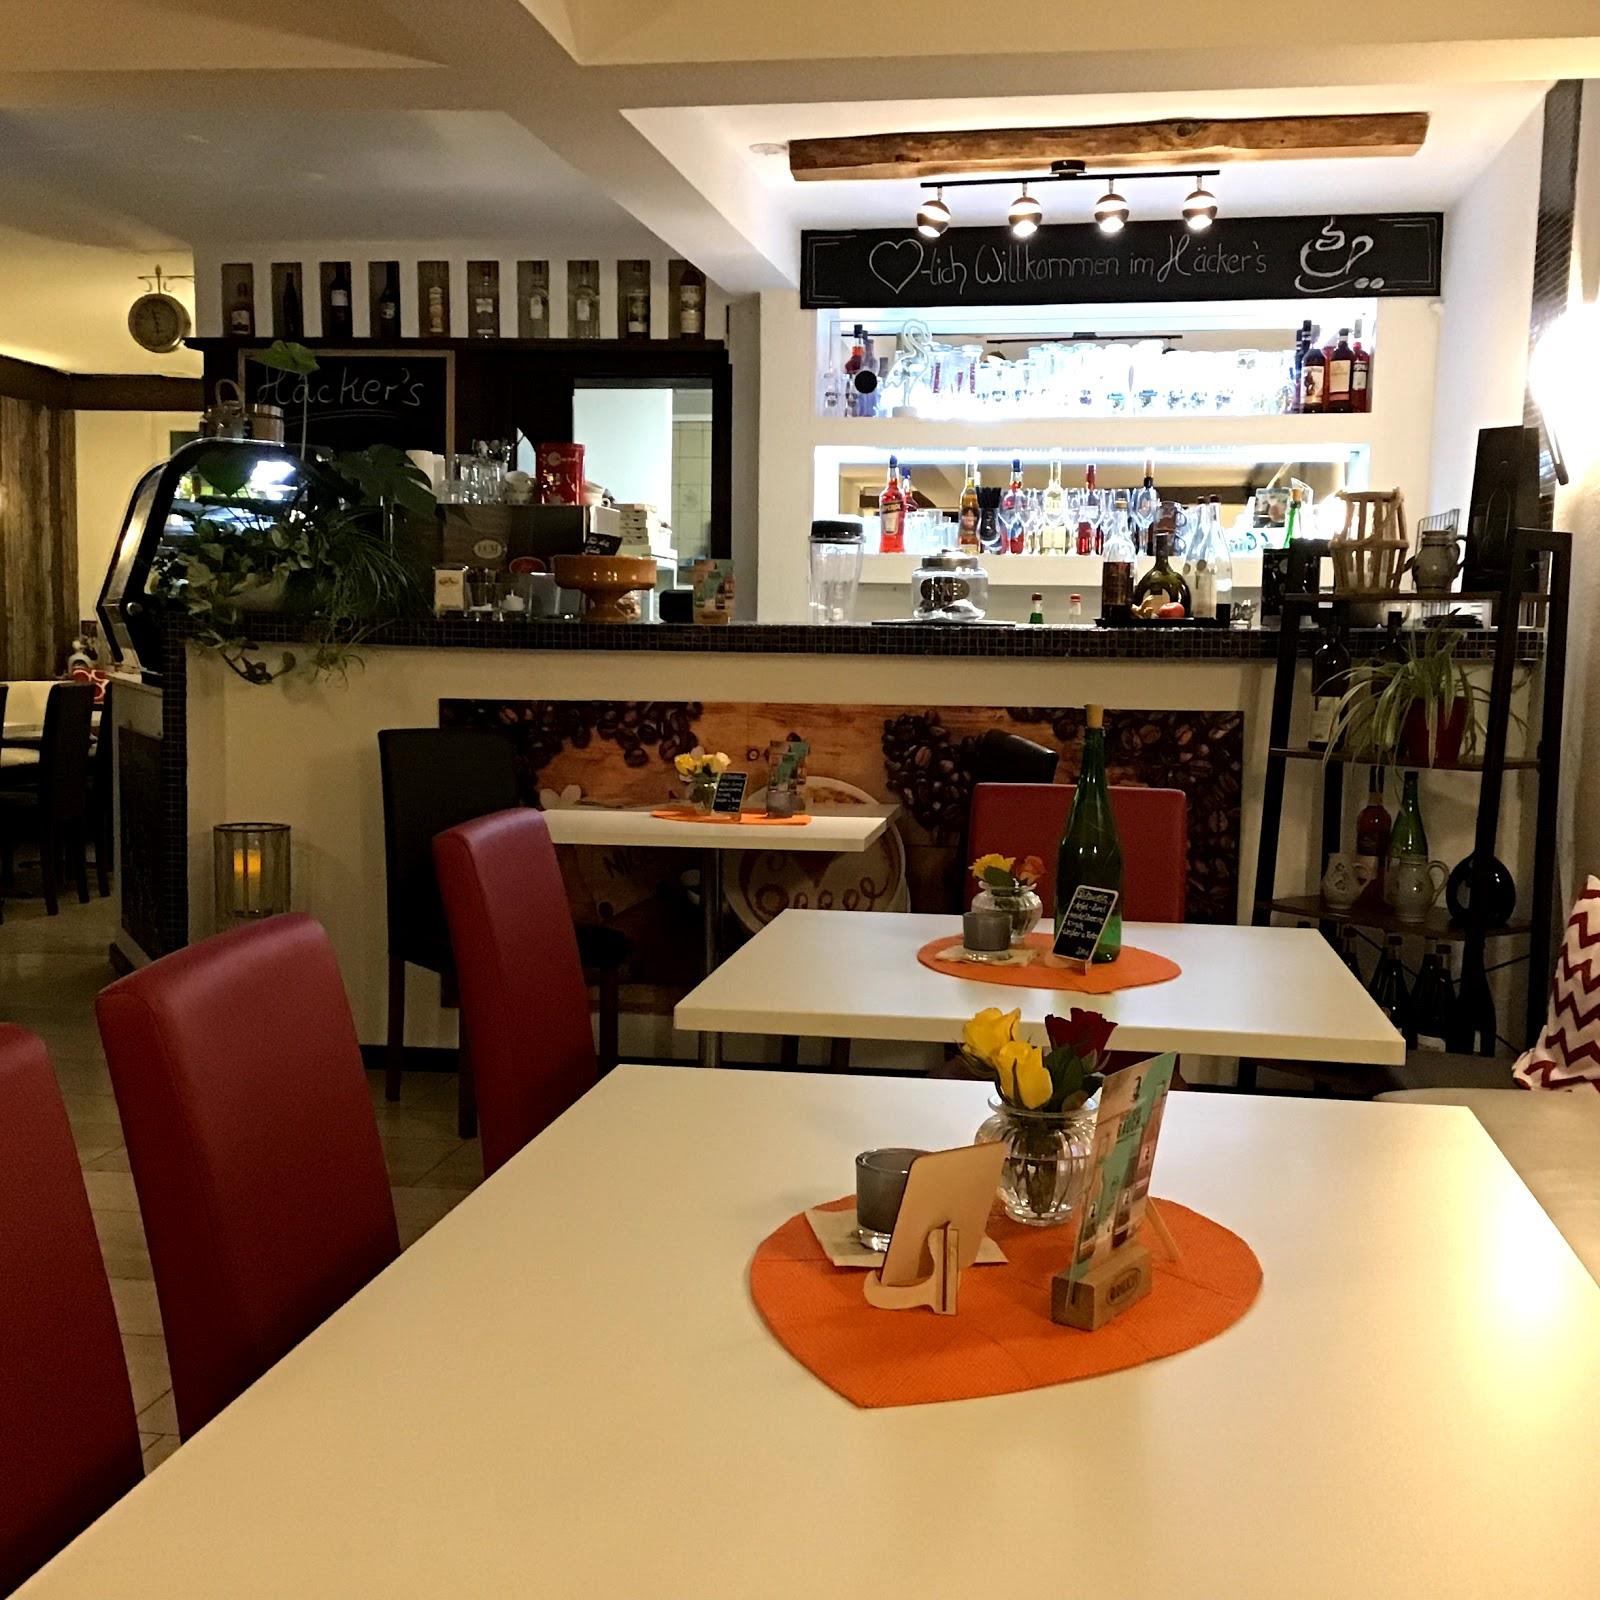 Restaurant "Häckers Cafe und mehr" in Bad Königshofen im Grabfeld